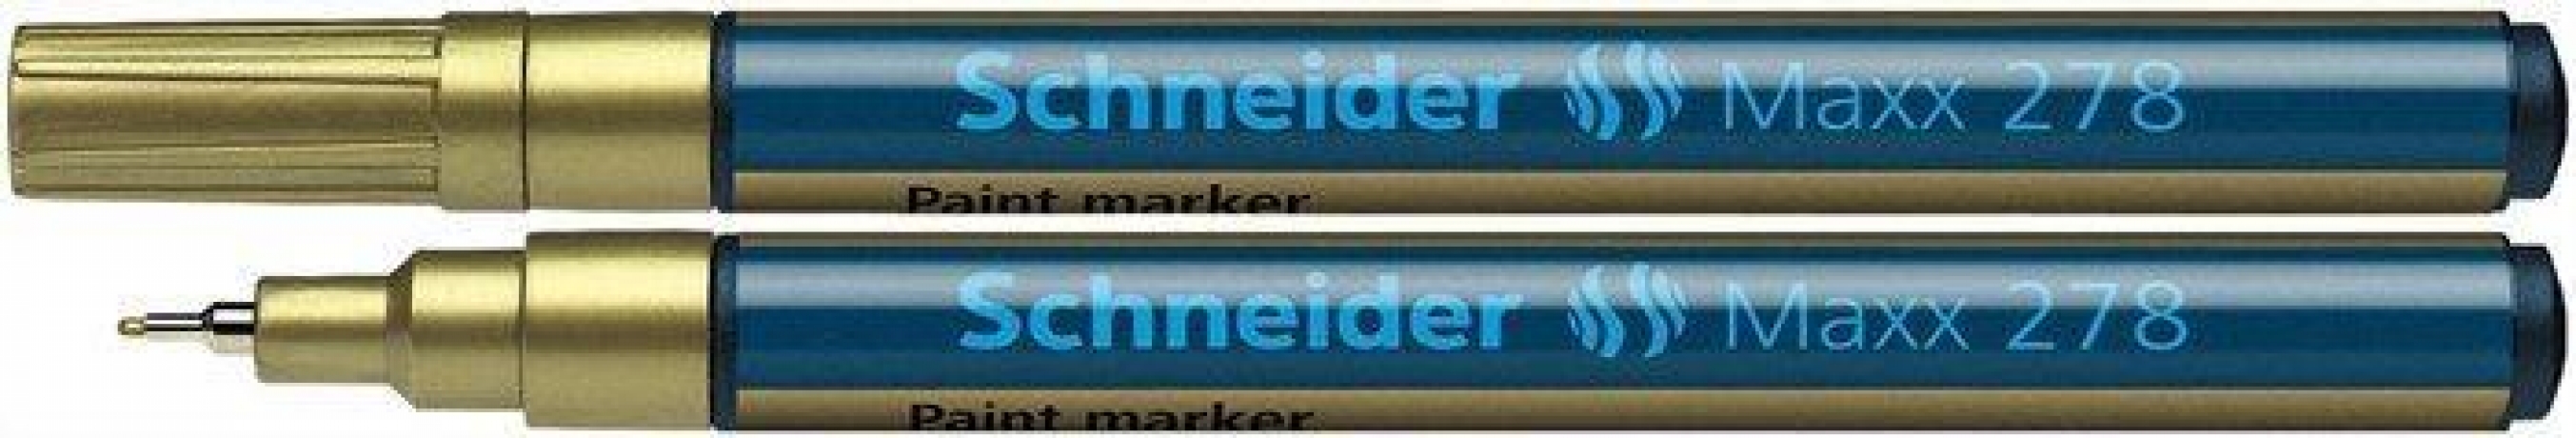 Marcador Dourado Schneider Maxx 278